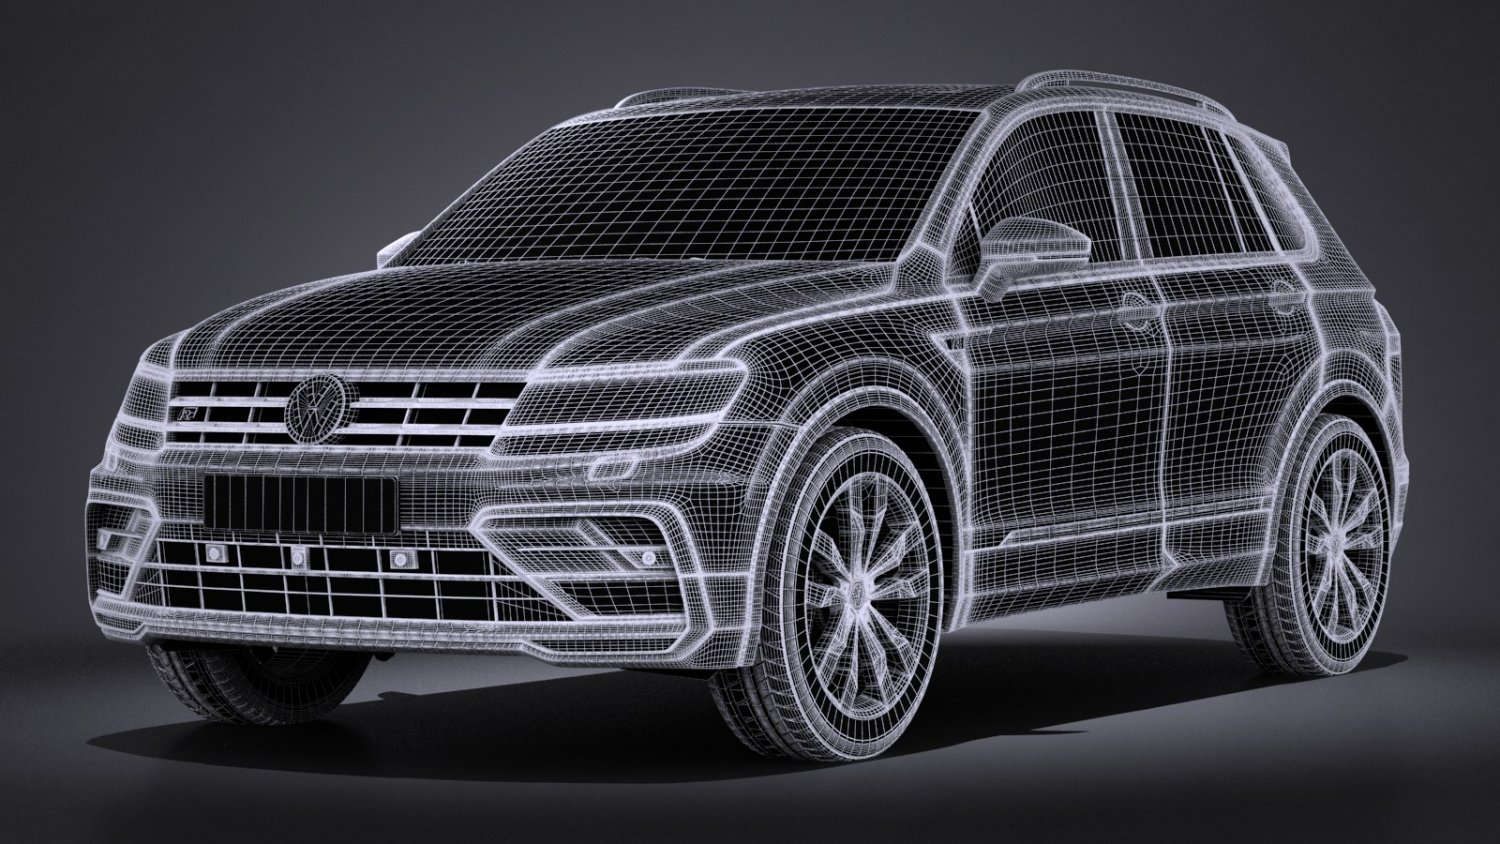 Volkswagen Tiguan R-line 2017 3D model - Download Vehicles on